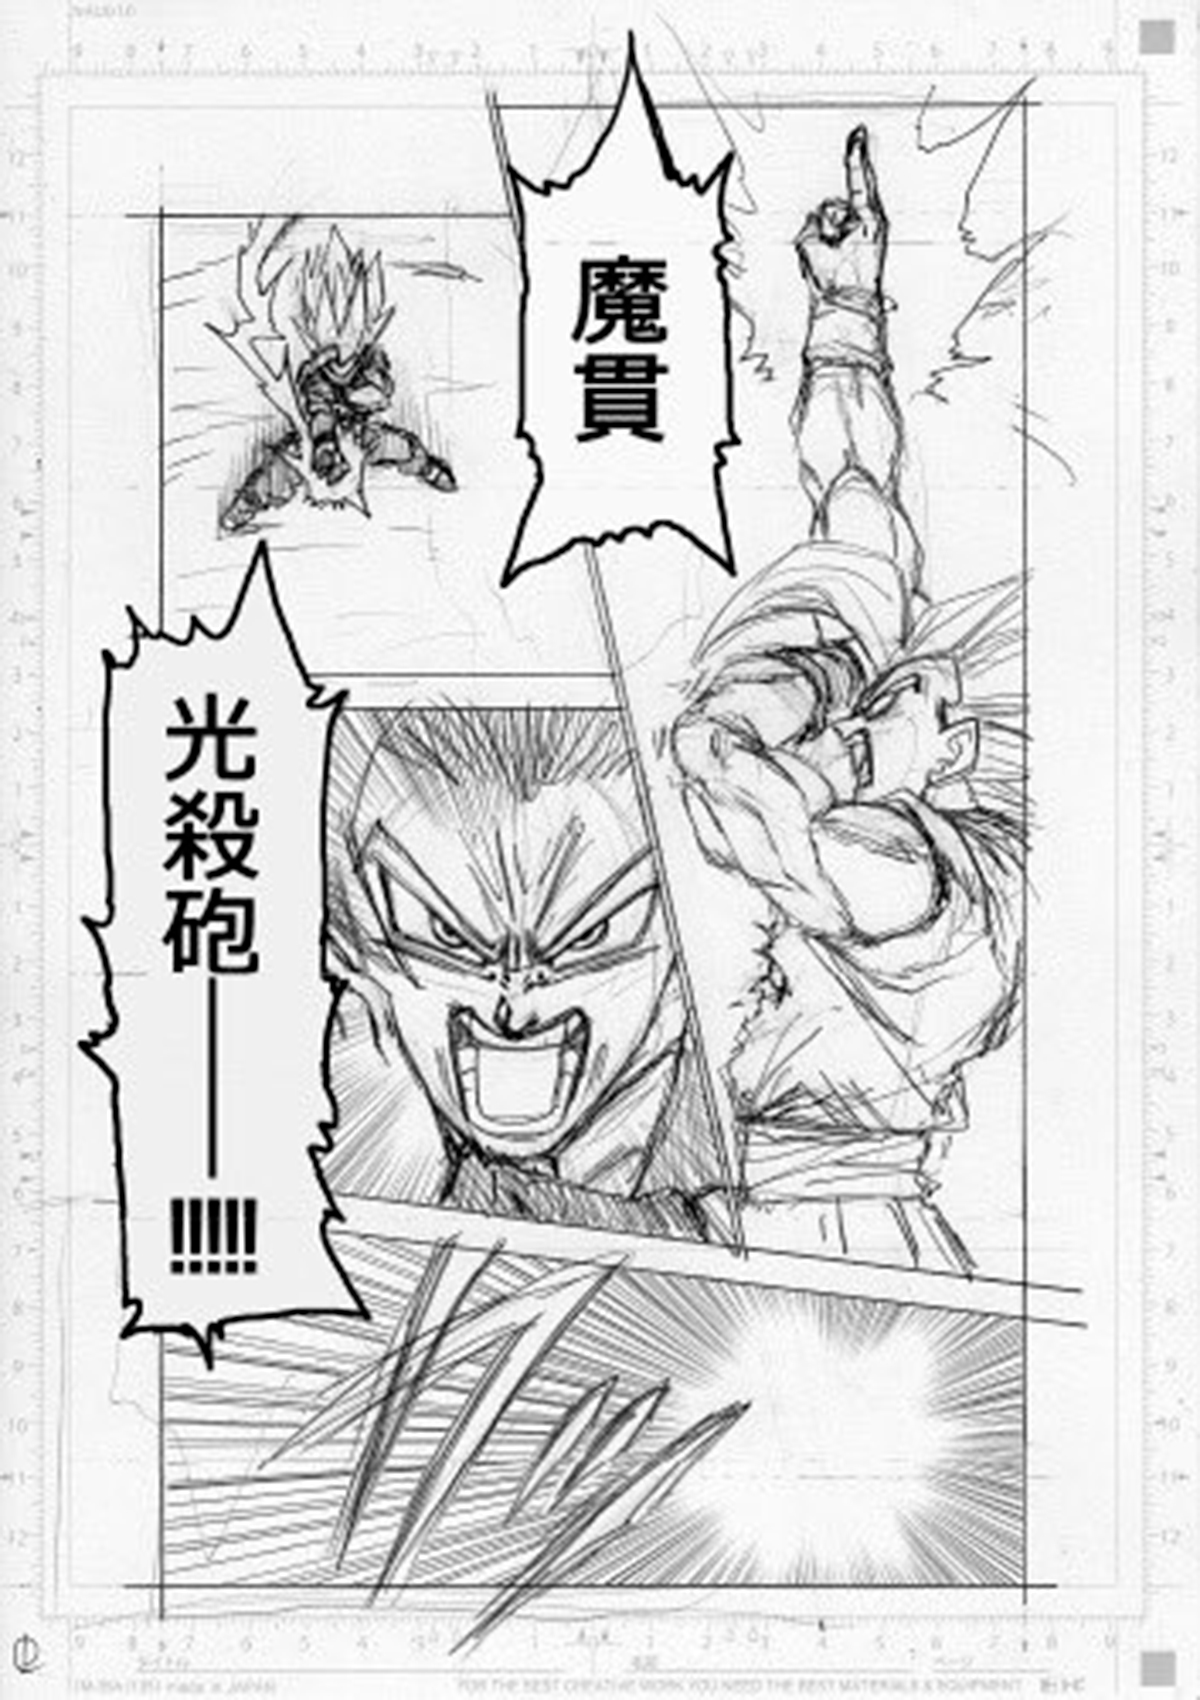 Primeras páginas del nuevo capítulo del manga de Dragon Ball Super